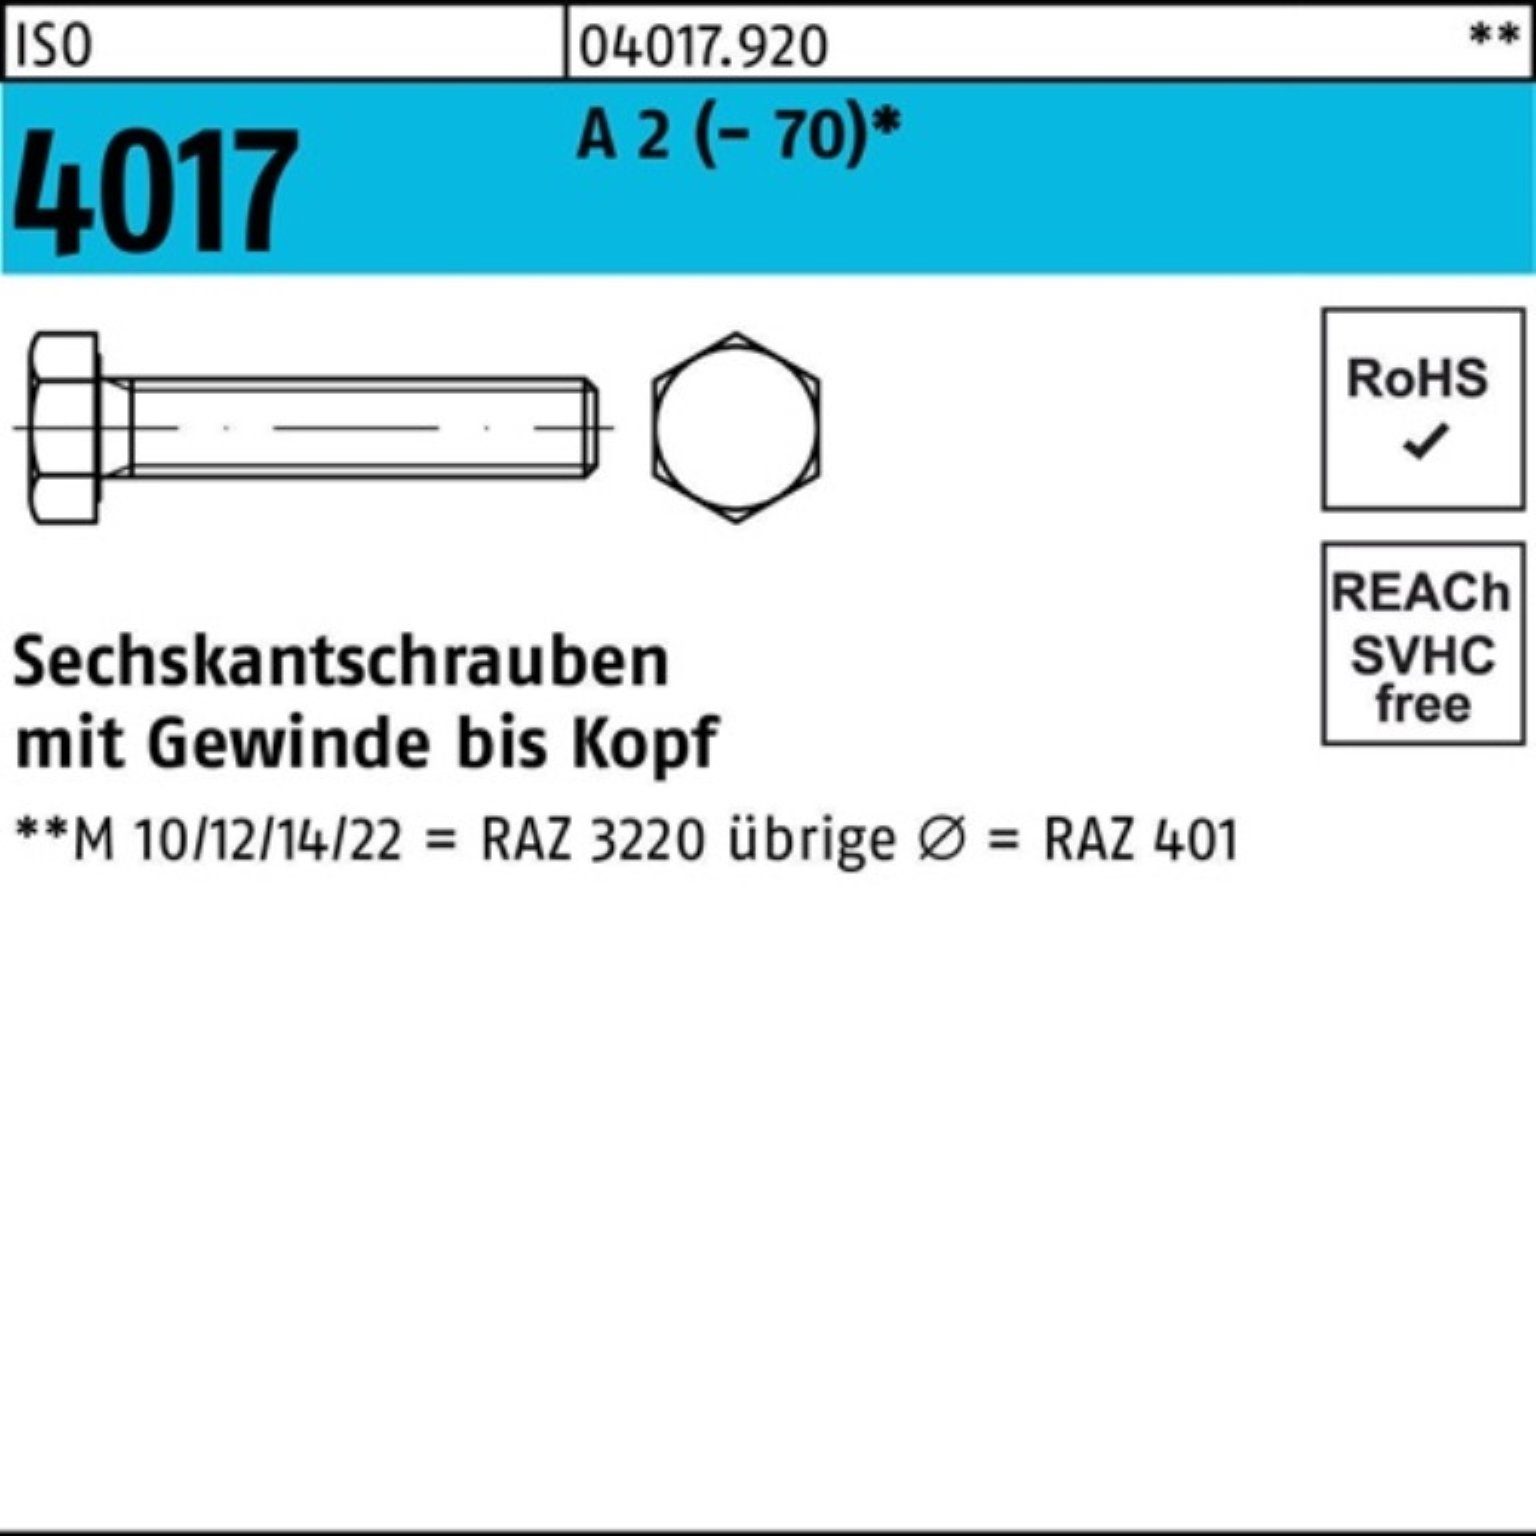 100er Sechskantschraube Pack 2 VG Sechskantschraube Bufab M3x 4017 A 30 Stück 100 ISO (70)